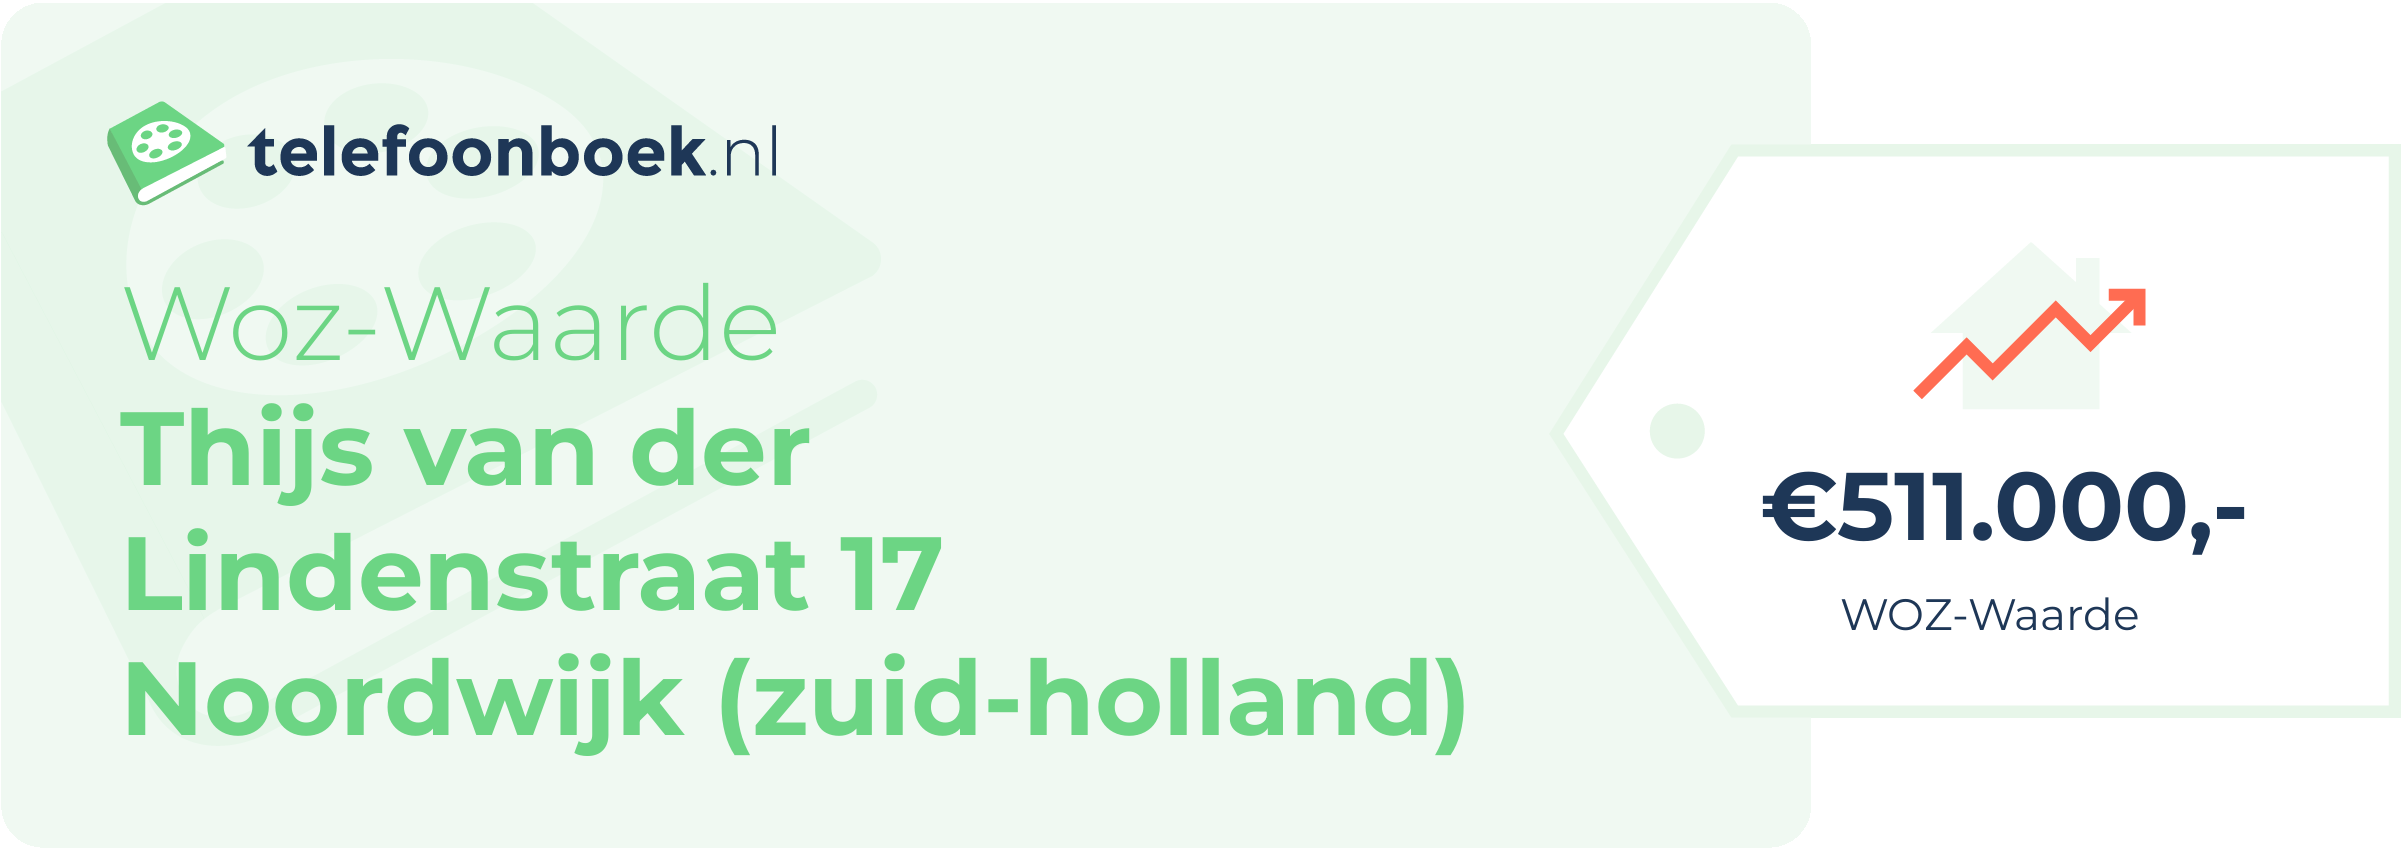 WOZ-waarde Thijs Van Der Lindenstraat 17 Noordwijk (Zuid-Holland)